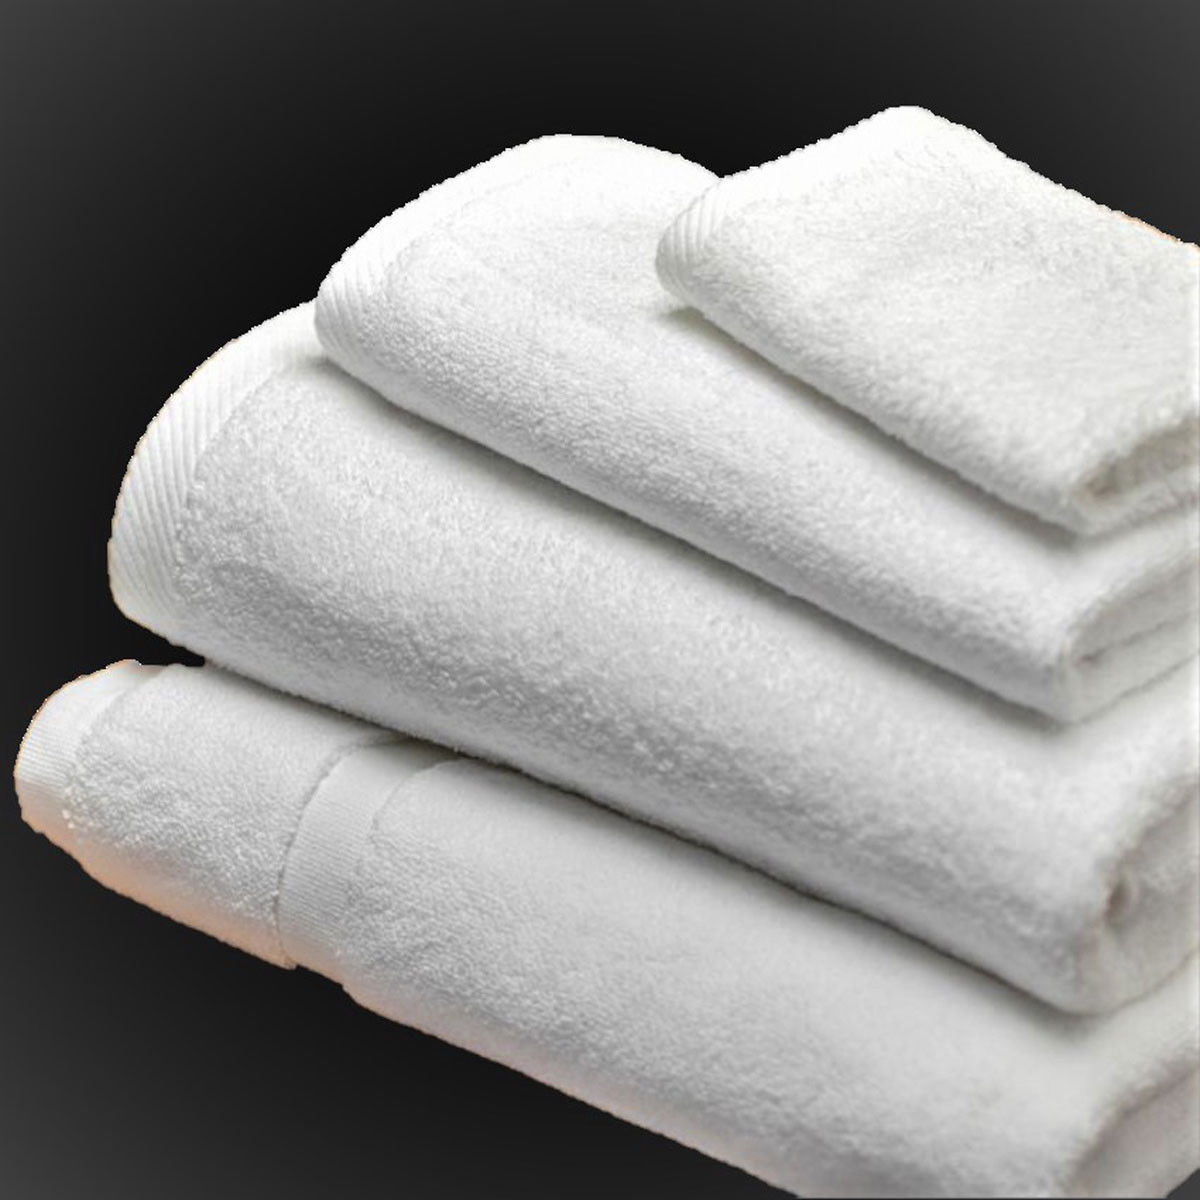 What color are the bulk bath towels wholesale?